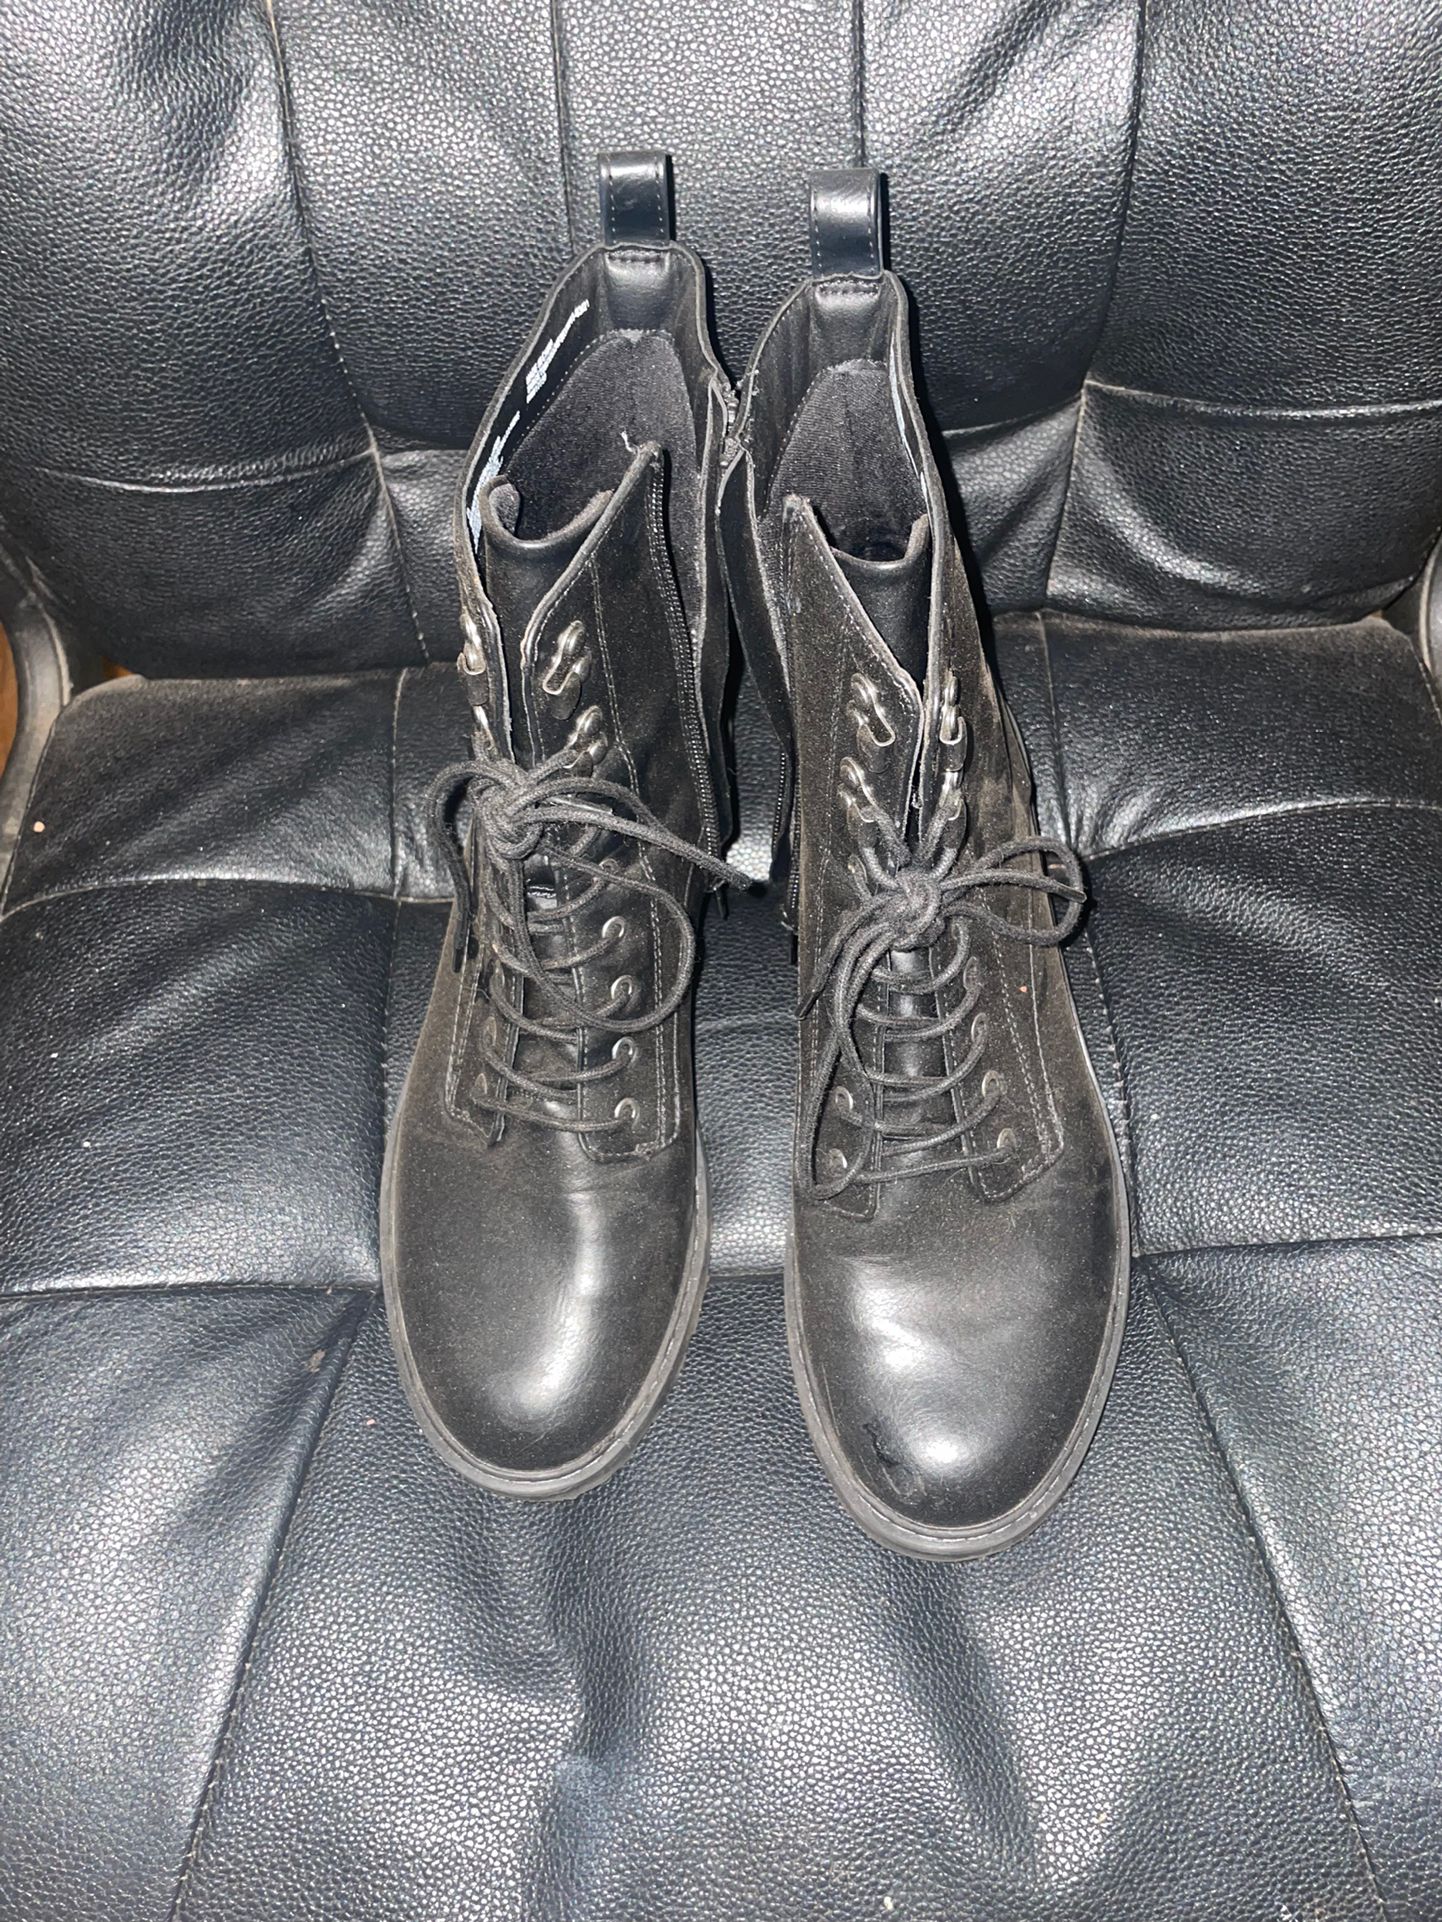 Black Combat Boots 